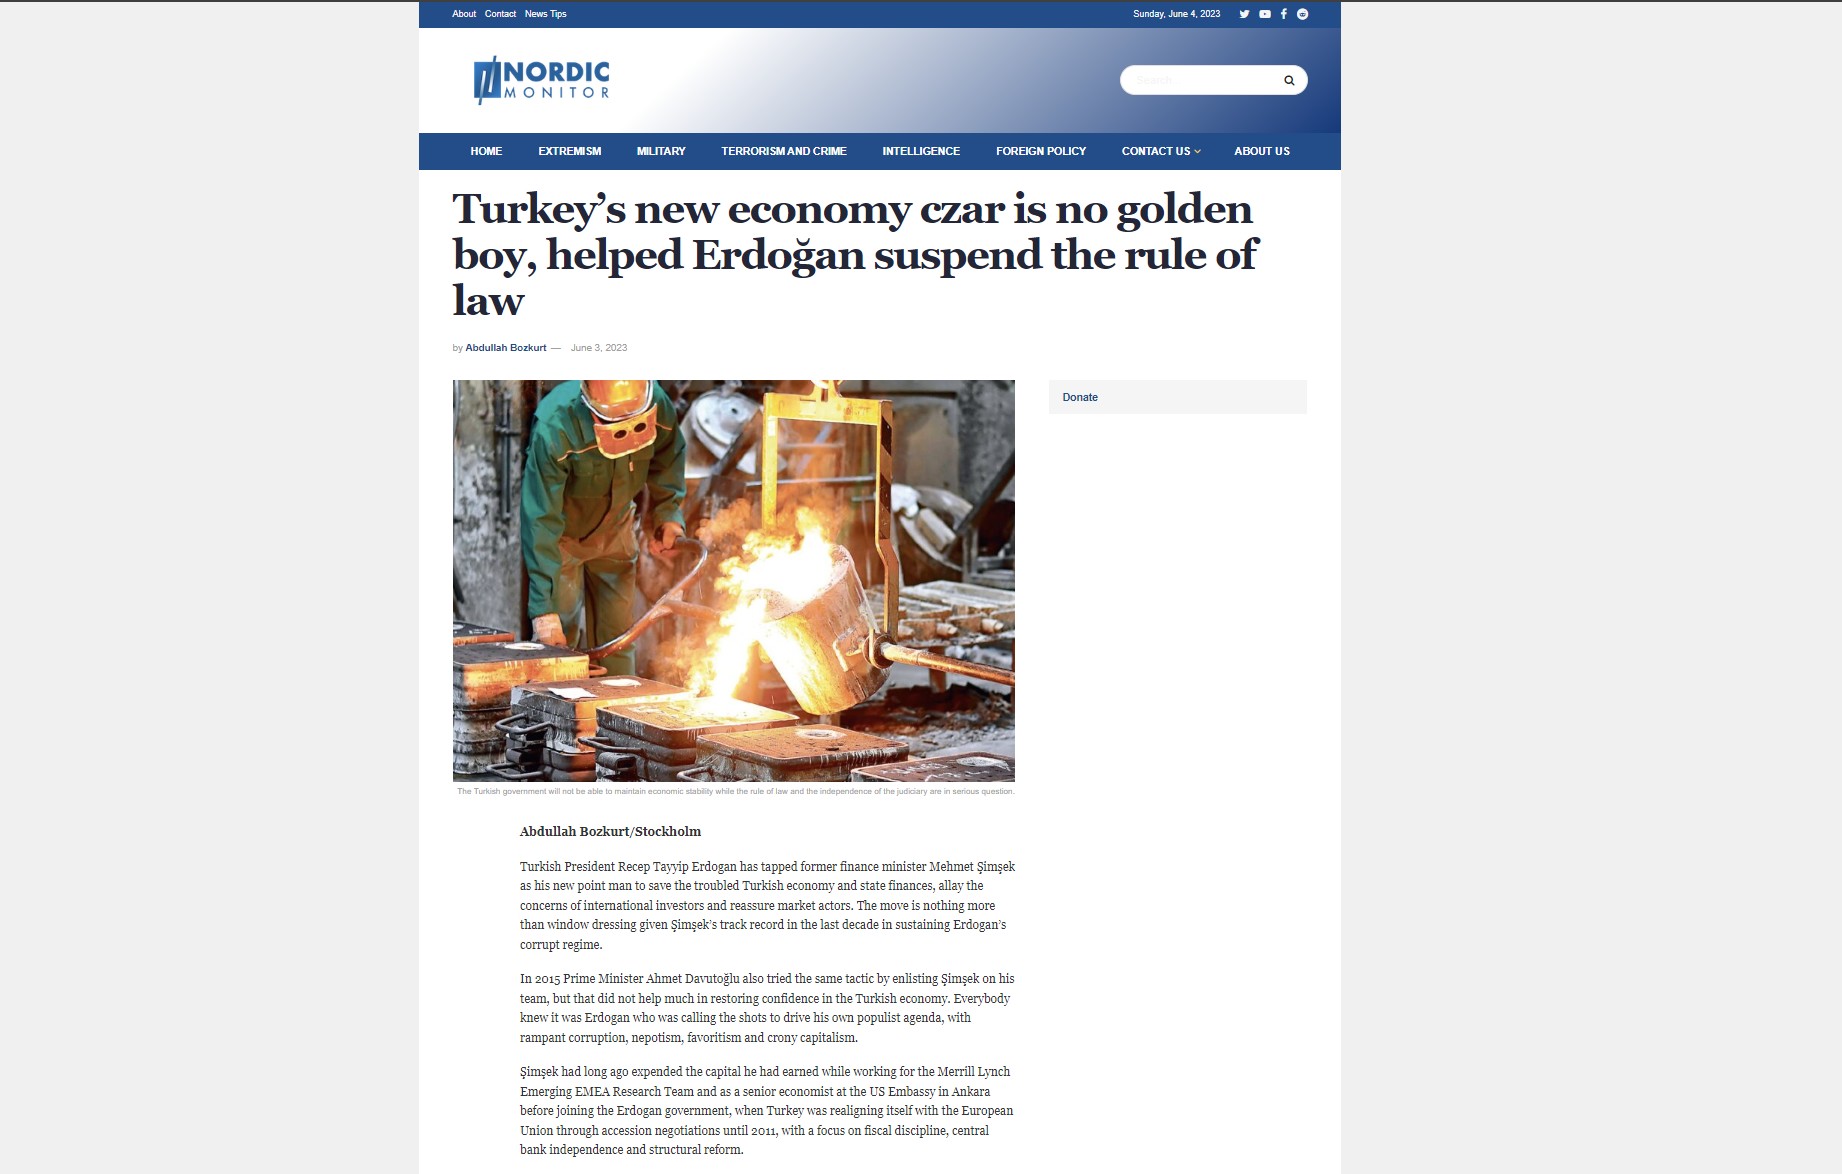 Αμπντουλάχ Μποζκουρτ στο Nordic Monitor: Ο νέος τσάρος της οικονομίας της Τουρκίας δεν είναι golden boy! Βοήθησε τον Ερντογάν να αναστείλει το κράτος δικαίου